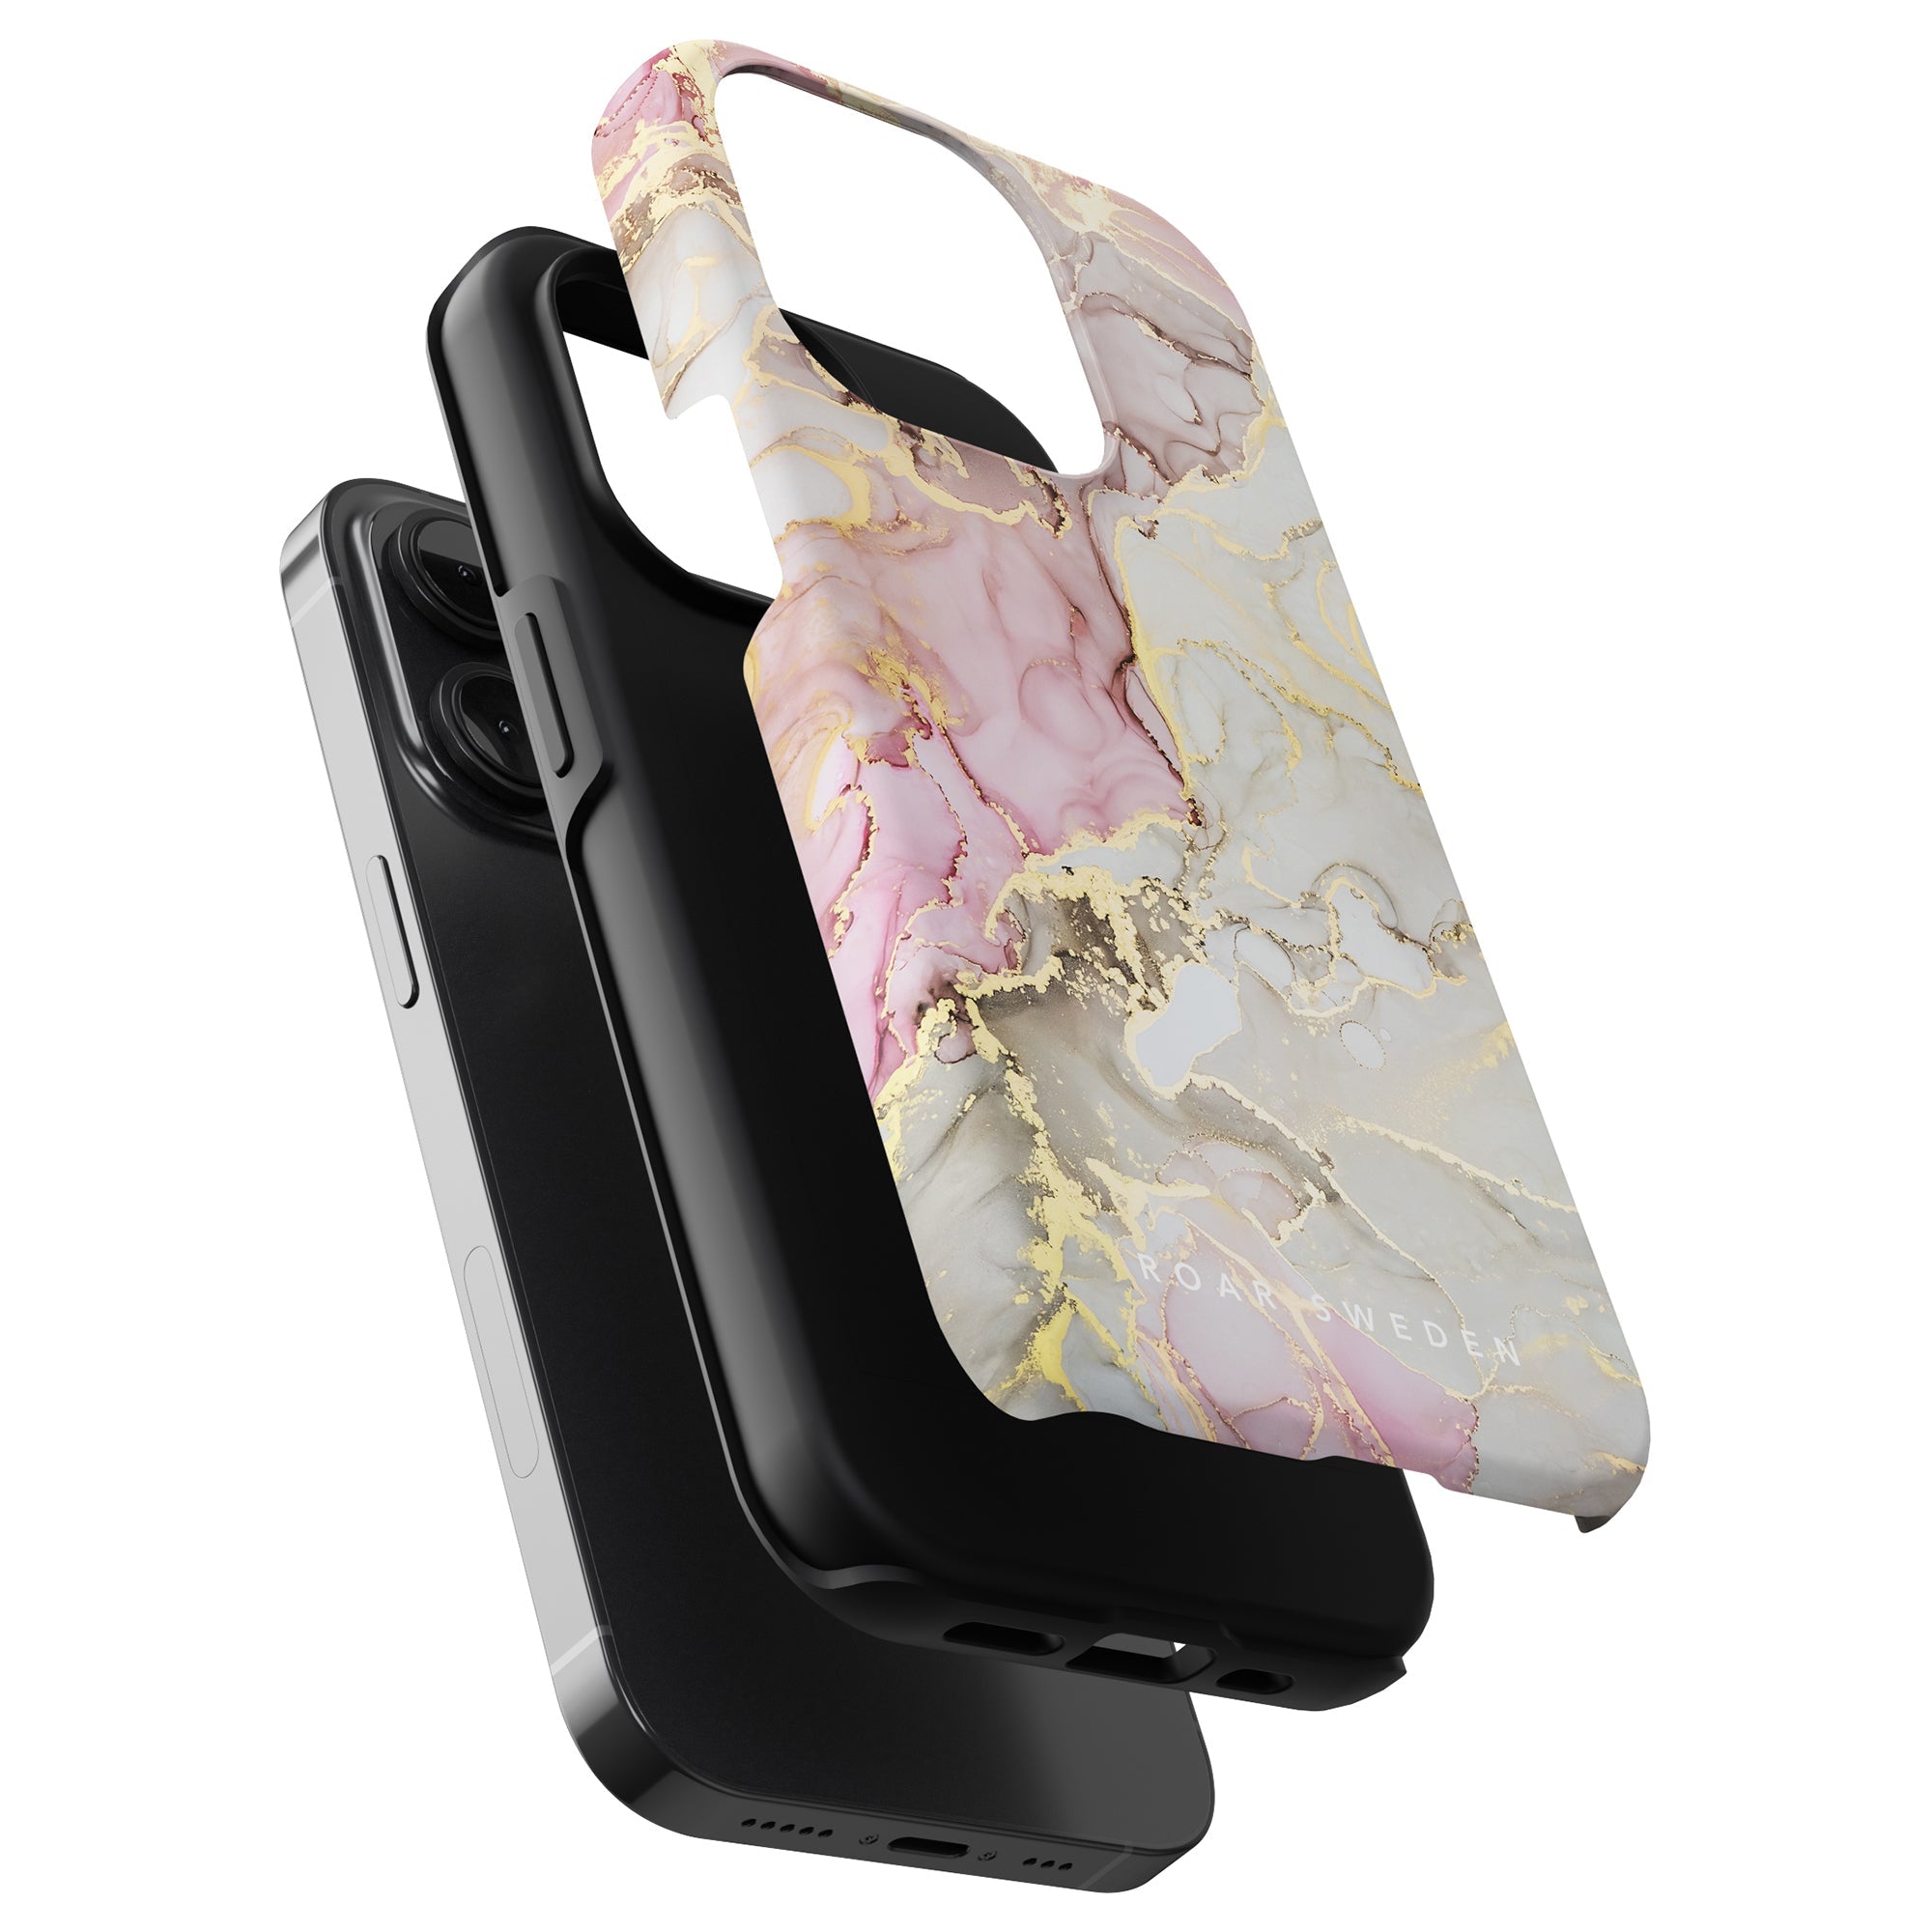 Ett elegant fodral i rosa och guld i marmor designat speciellt för Printeers Glitter - Tough fodral på iPhone 11 Pro.